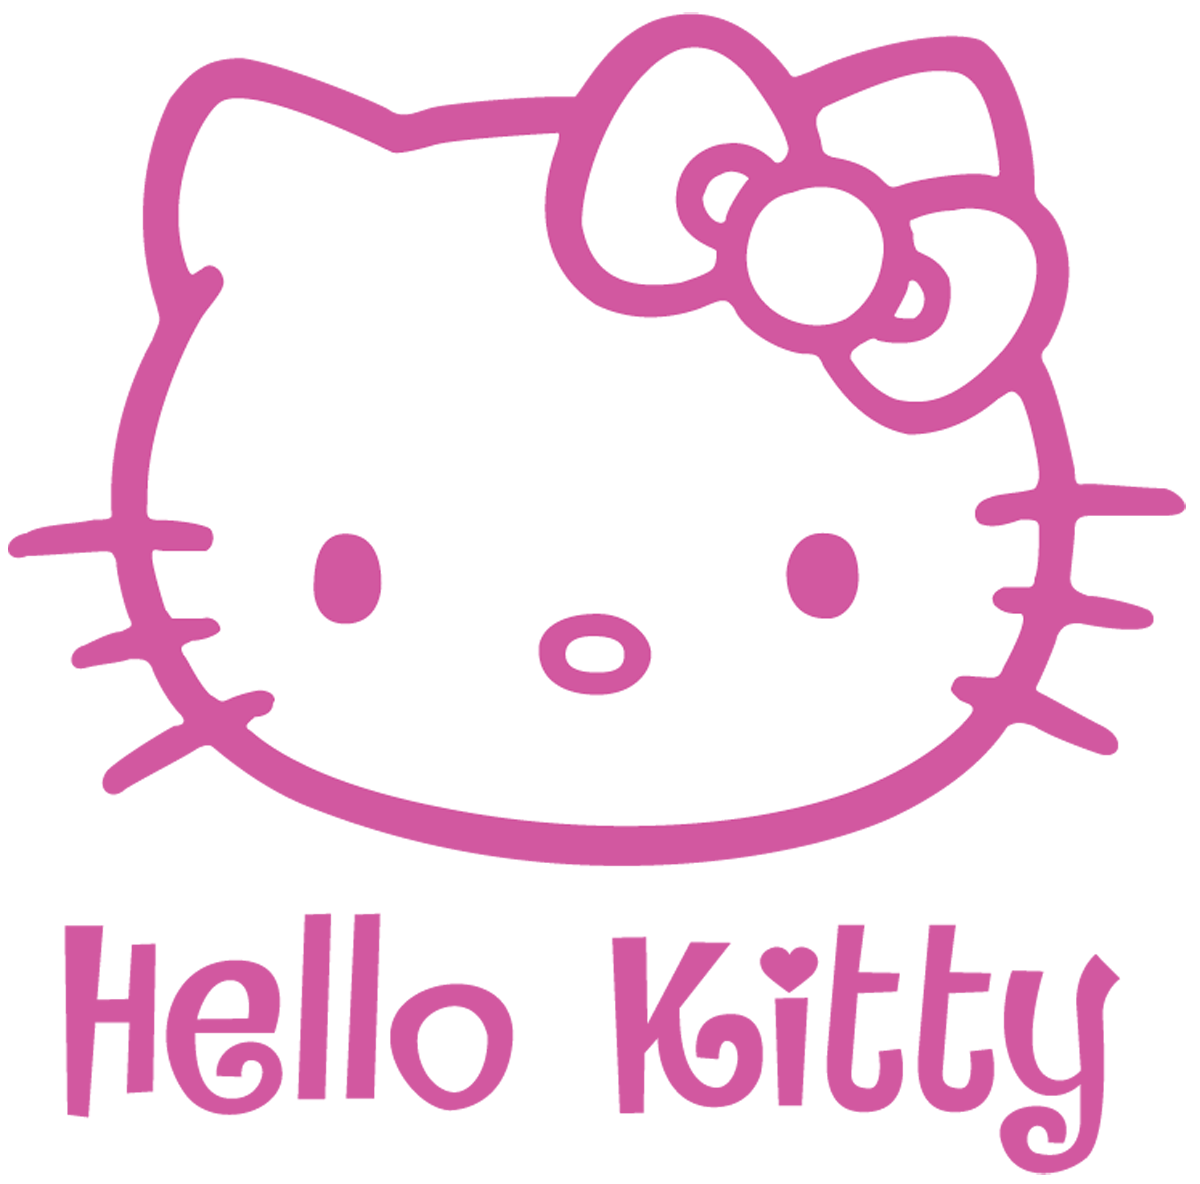 Hello Kitty Wallpaper Hd Download - Informasi Terbaru Dan ...